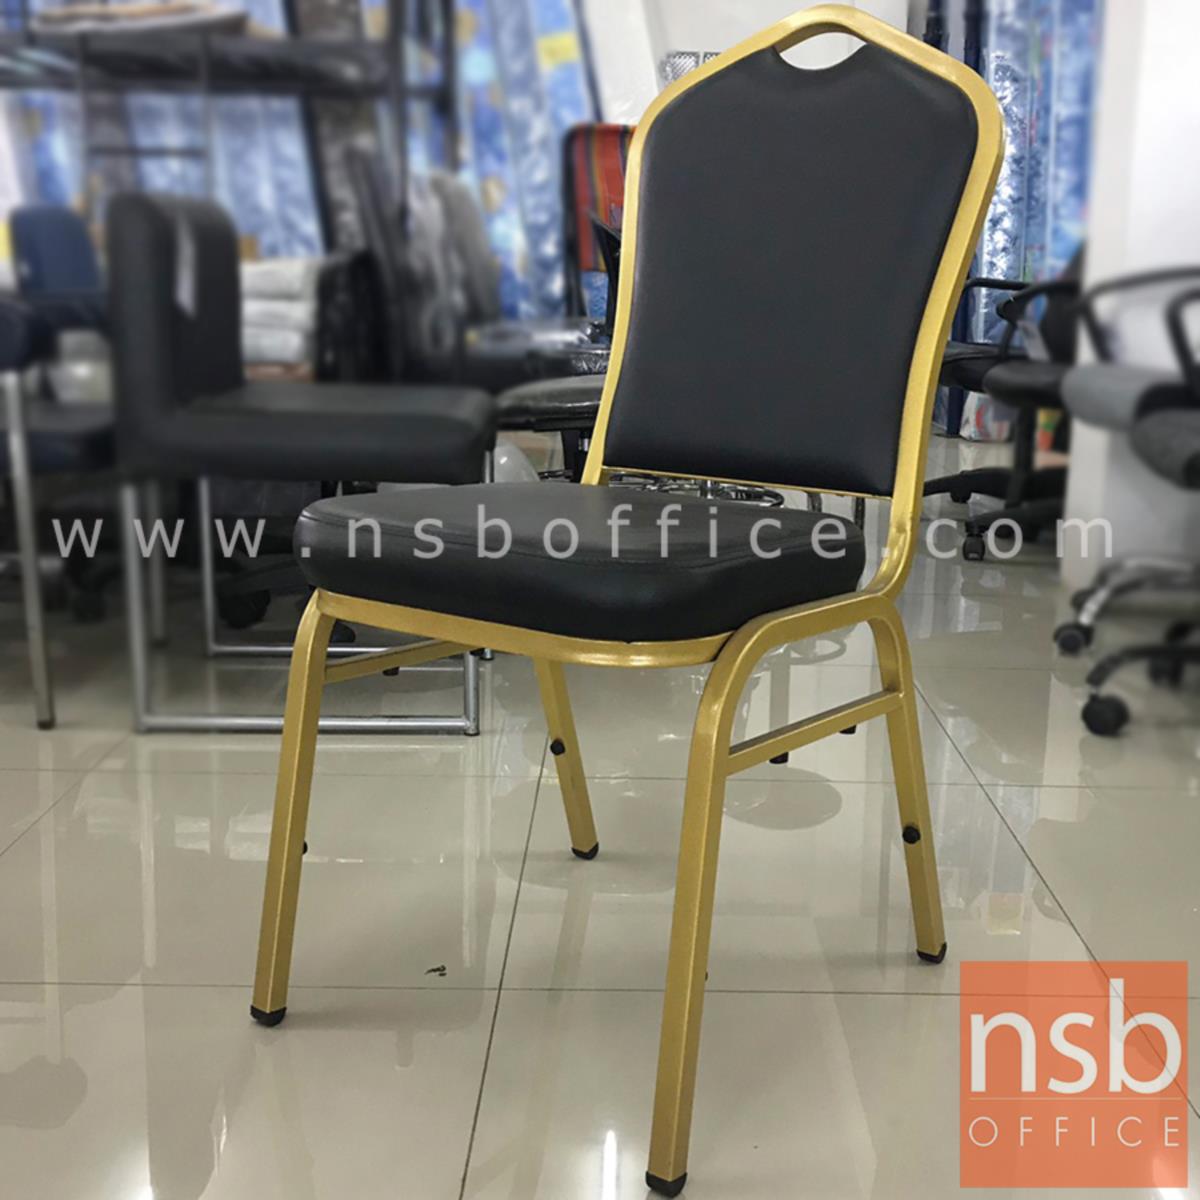 L02A294:เก้าอี้โมเดิร์นหนังเทียม รุ่น NSB-CHAIR9 ขนาด 41W*95H cm. โครงสีทอง (STOCK-1 ตัว)